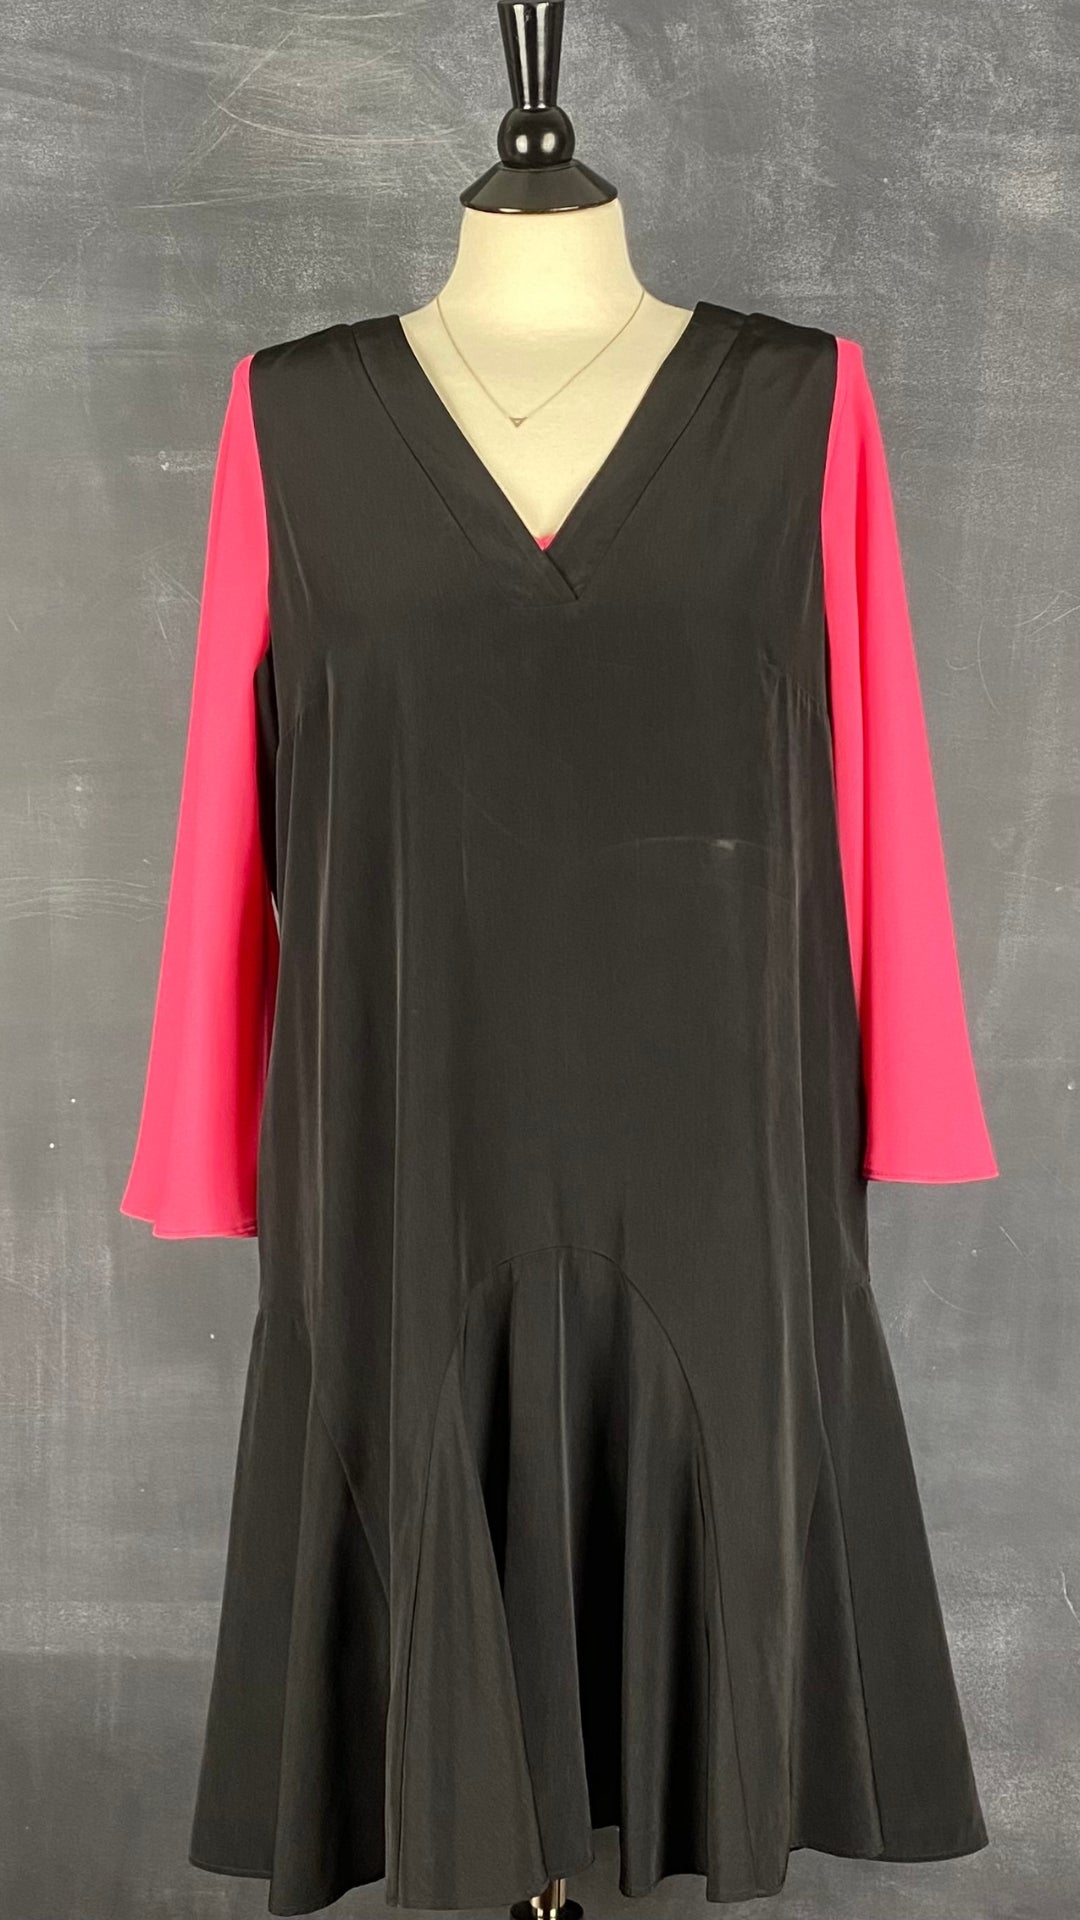 Robe noire jupe fluide ample J.Crew, taille large. Vue de l'agencement avec la blouse rose à manches ouvertes.